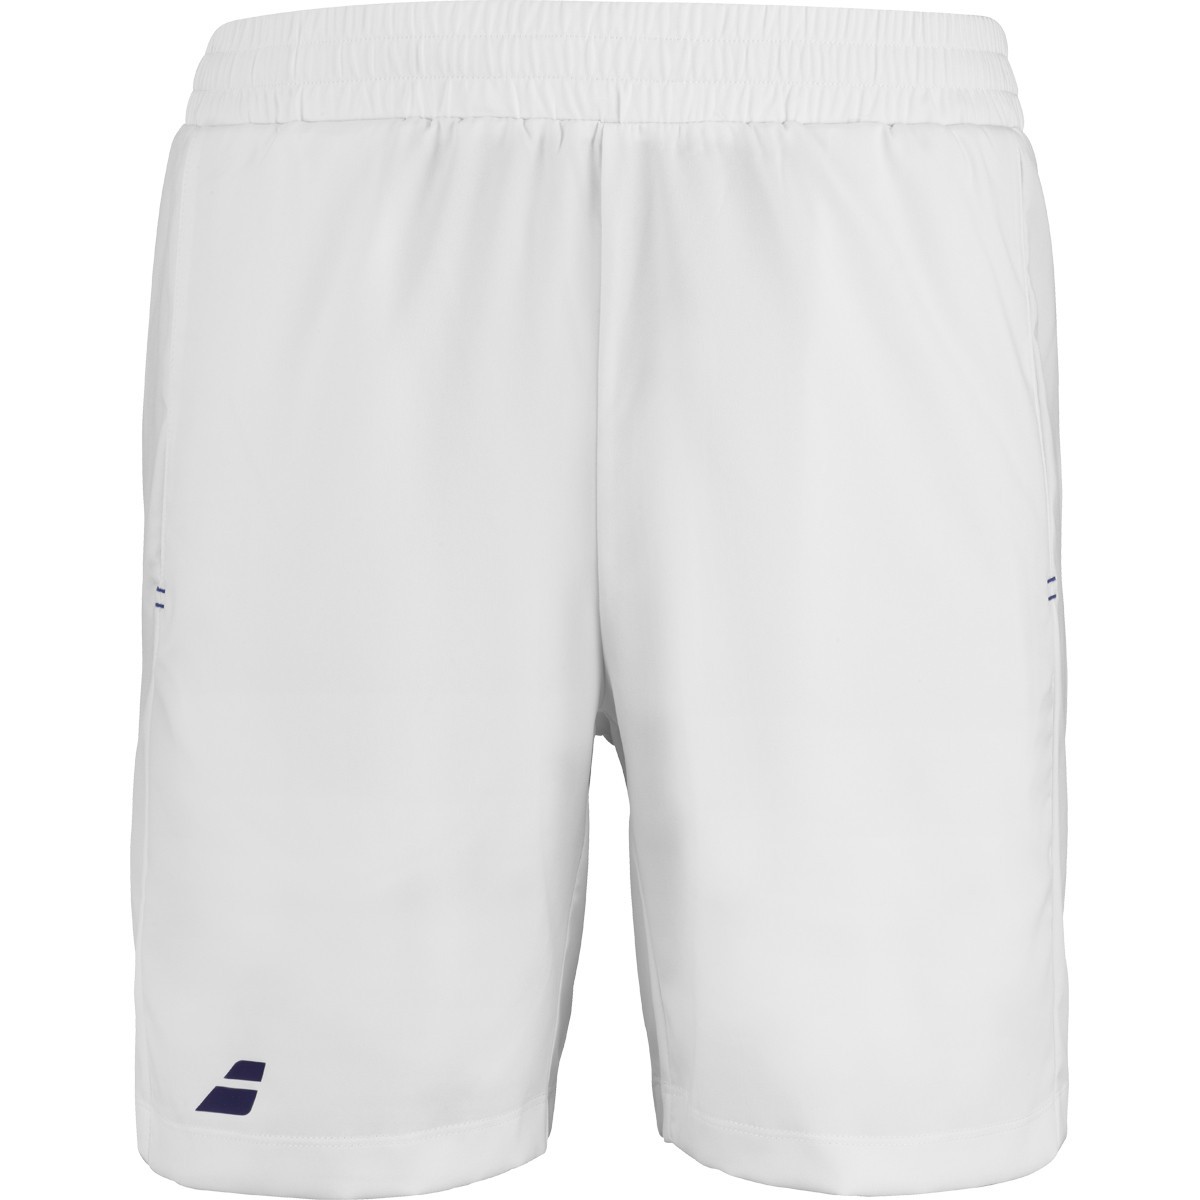 Теннисные шорты мужские Babolat Play Short Men white/blue